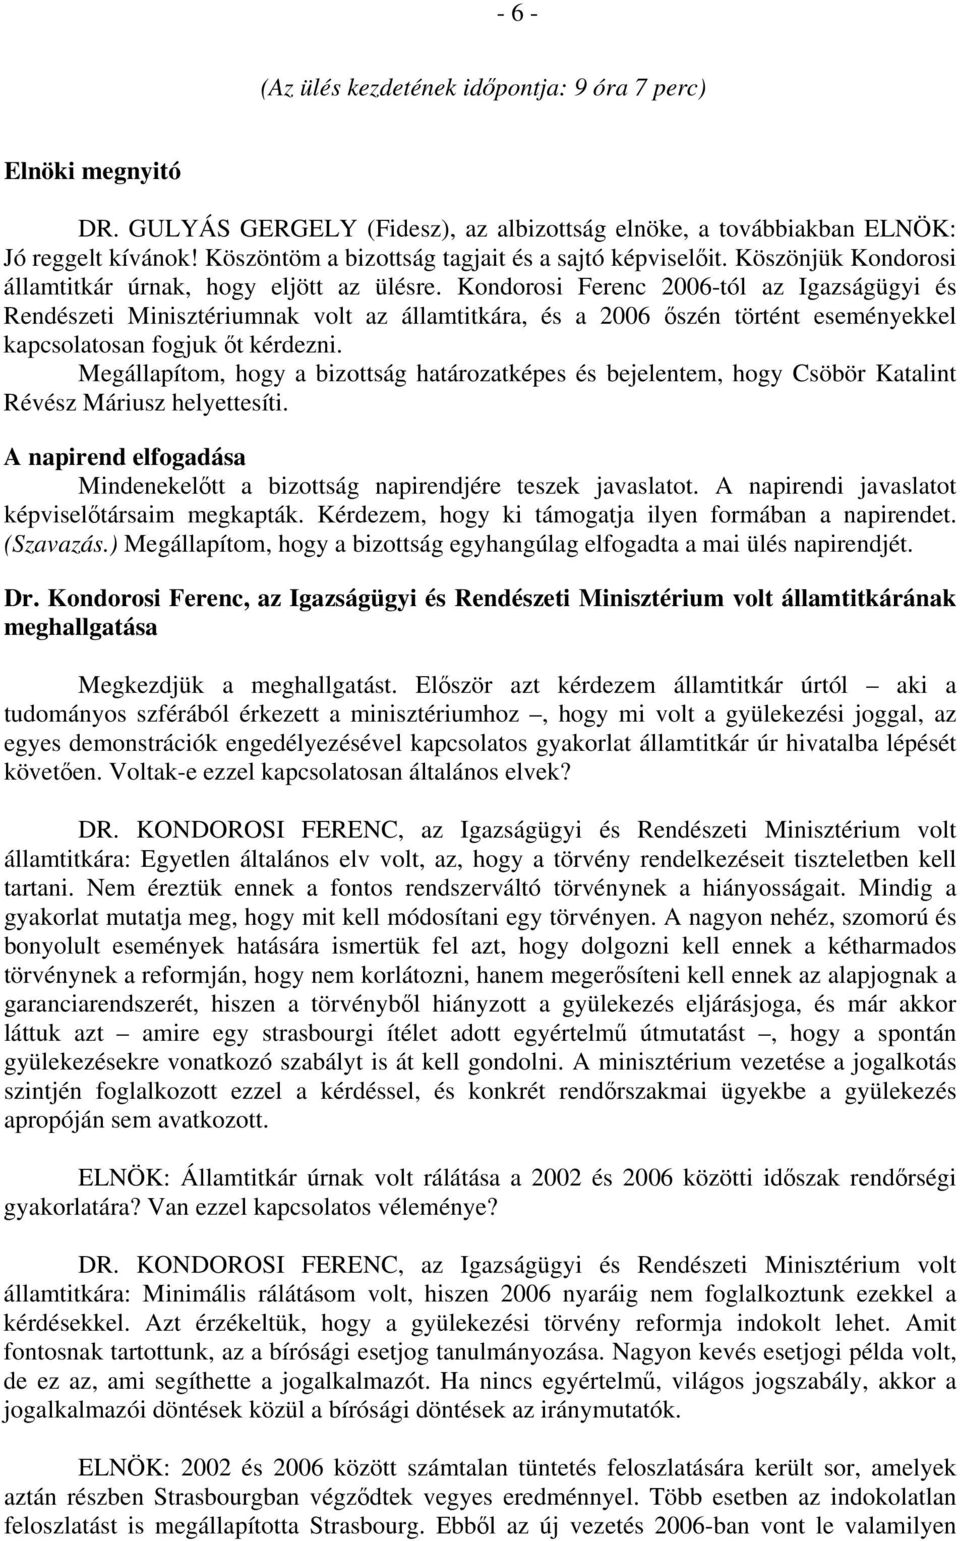 Kondorosi Ferenc 2006-tól az Igazságügyi és Rendészeti Minisztériumnak volt az államtitkára, és a 2006 őszén történt eseményekkel kapcsolatosan fogjuk őt kérdezni.